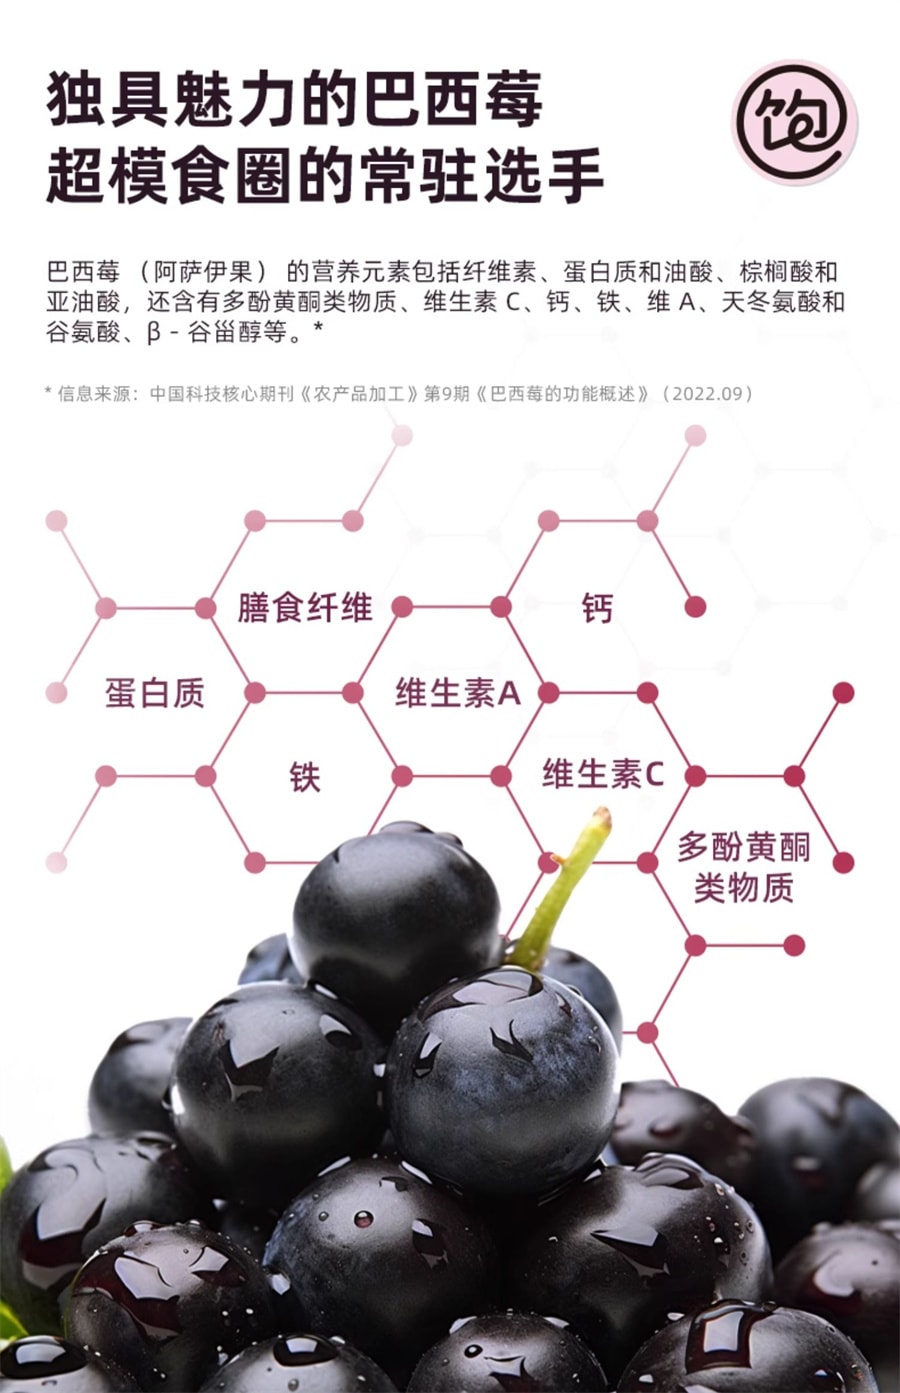 【中国直邮】王饱饱  巴西莓粉花青素果蔬纤维粉冲饮品   10条装/盒